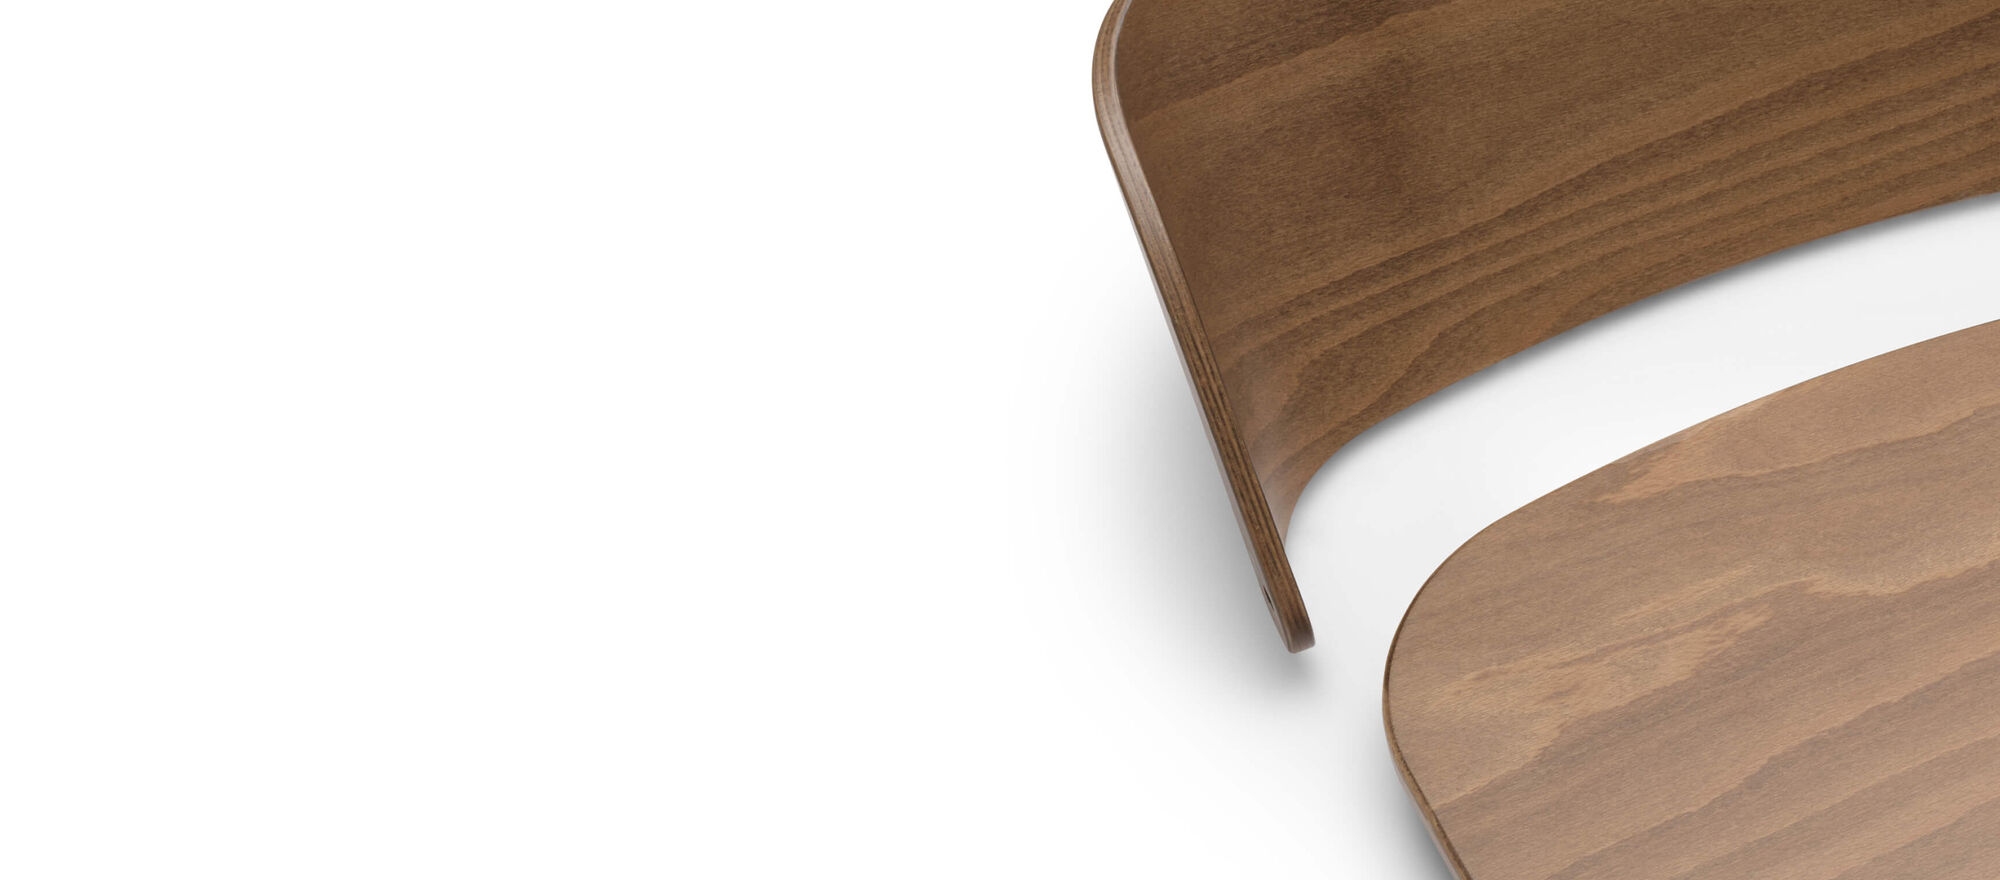 부가부 지라프 의자의 분리형 등받이와 시트는 고급스럽게 광택 마감된 천연 목재로 제작되었습니다.